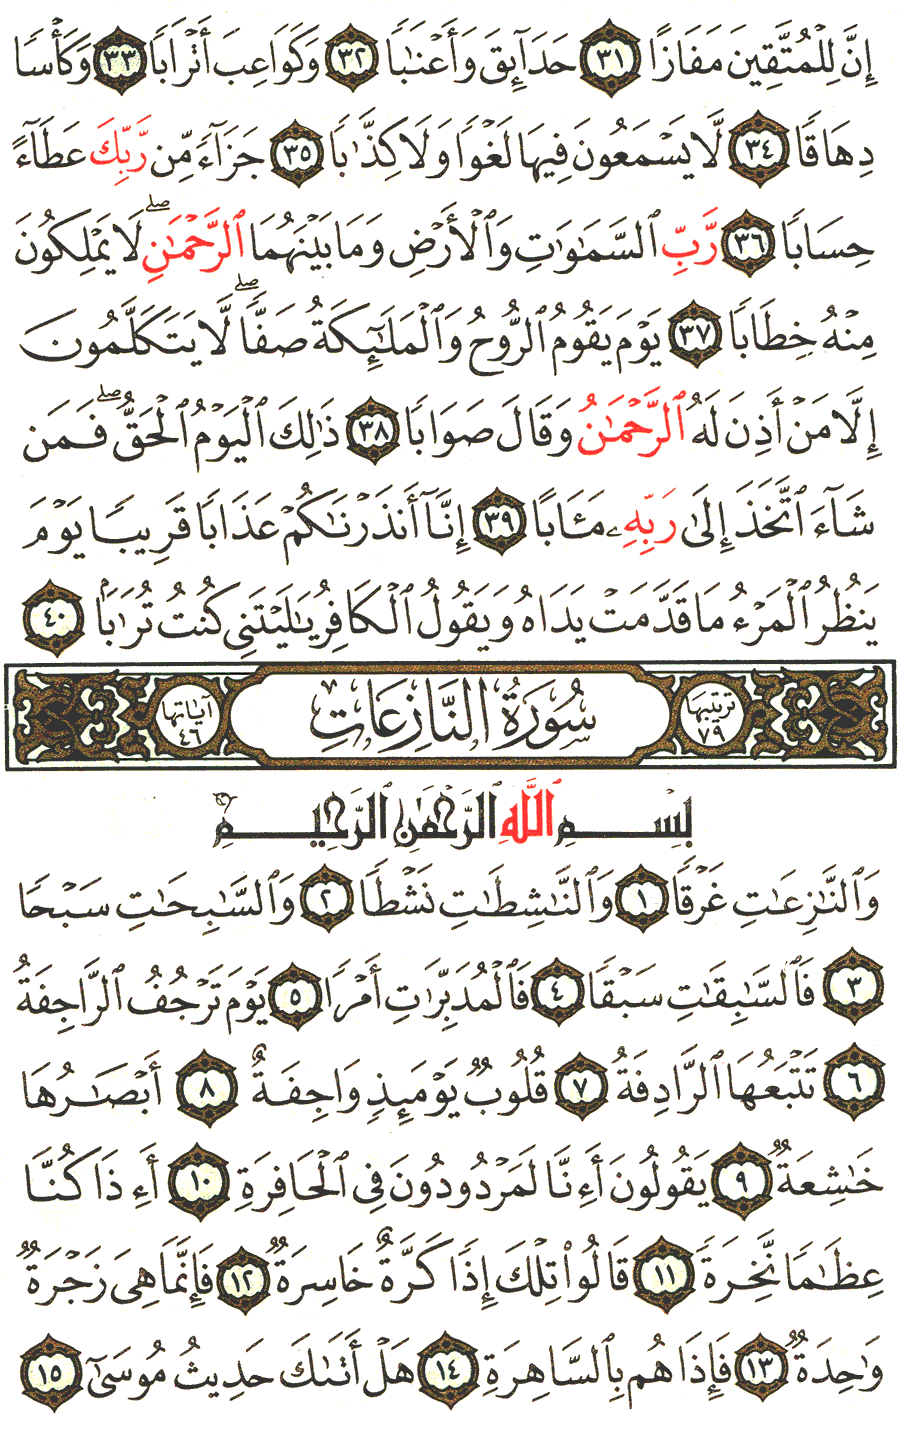 الصفحة رقم 583 من القرآن الكريم مكتوبة من المصحف